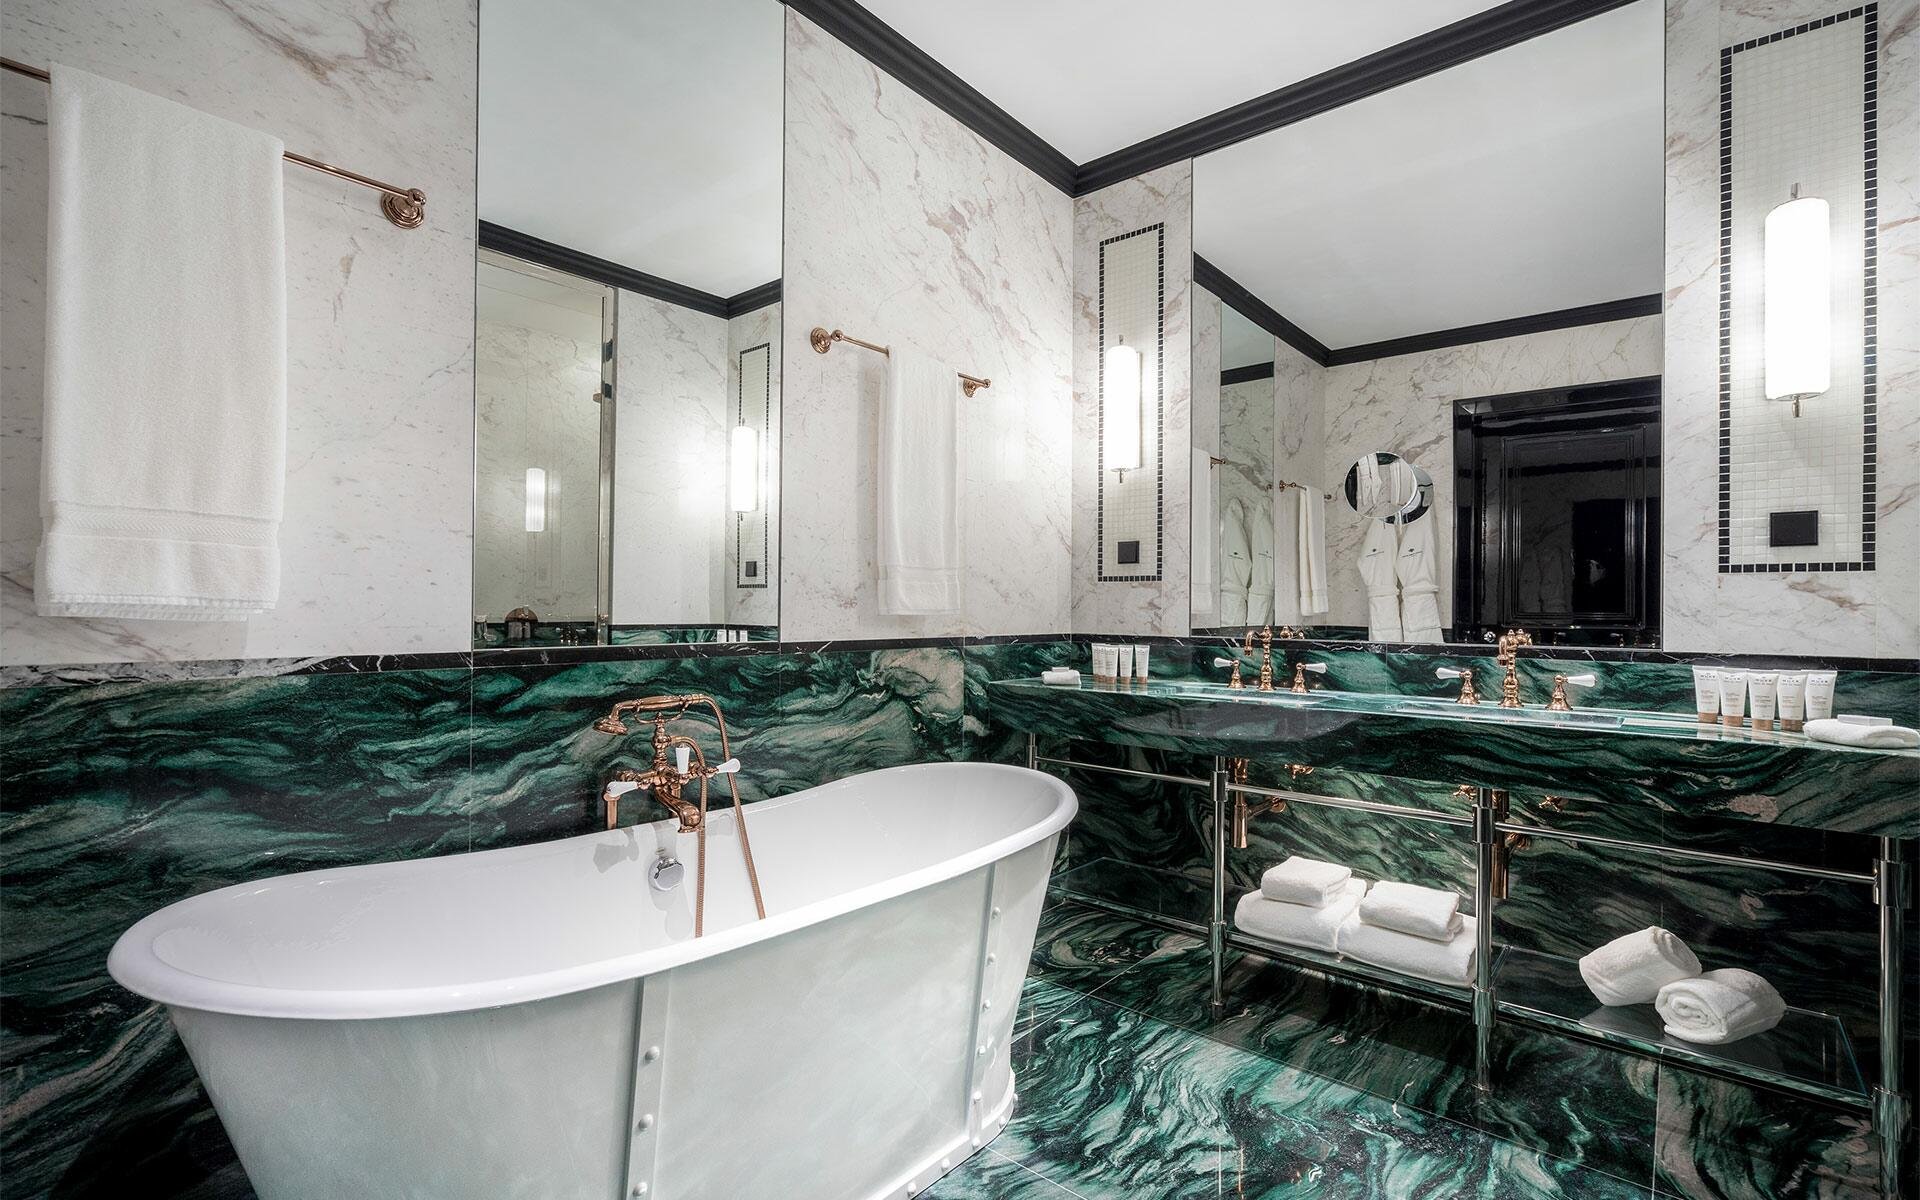 Maison Albar Hotels Le Monumental Palace bathroom suite